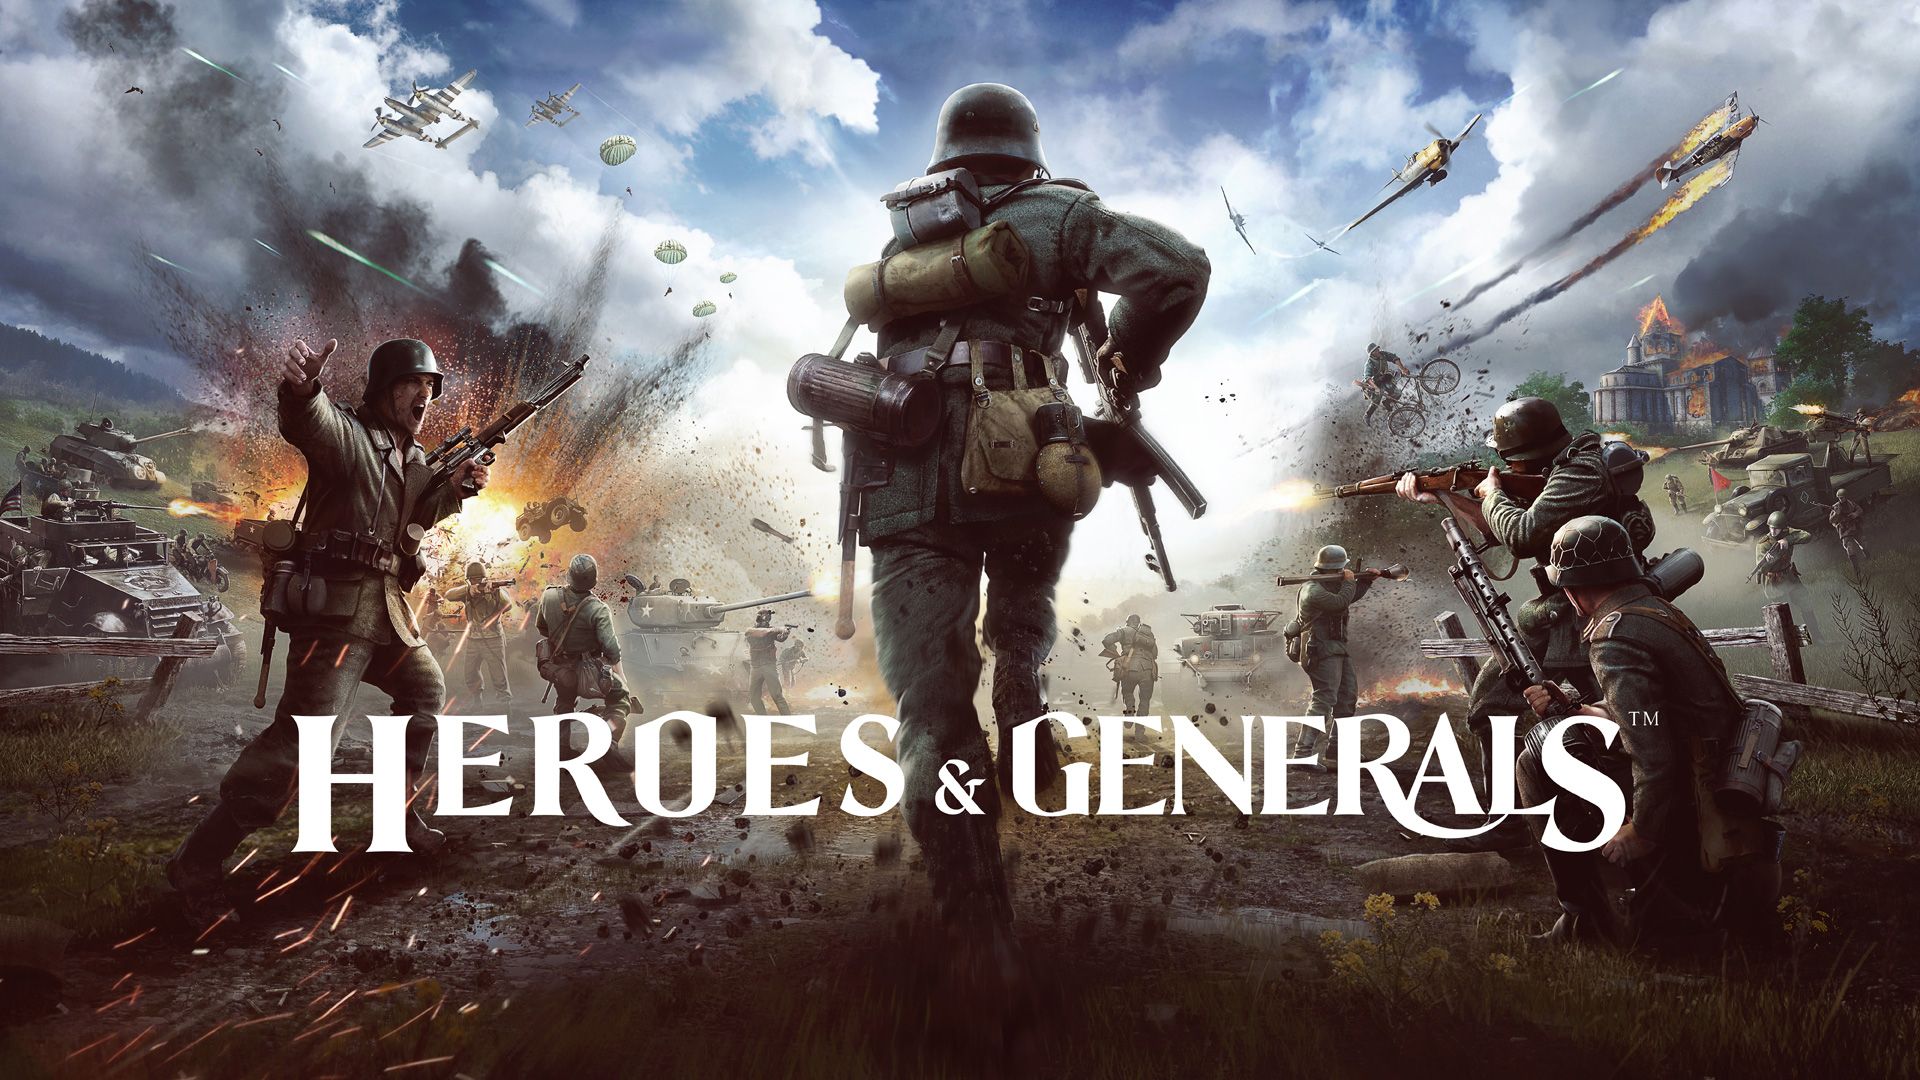 Heroes & Generals Background. Heroes & Generals Wallpaper, Heroes Wallpaper and Company of Heroes Wallpaper